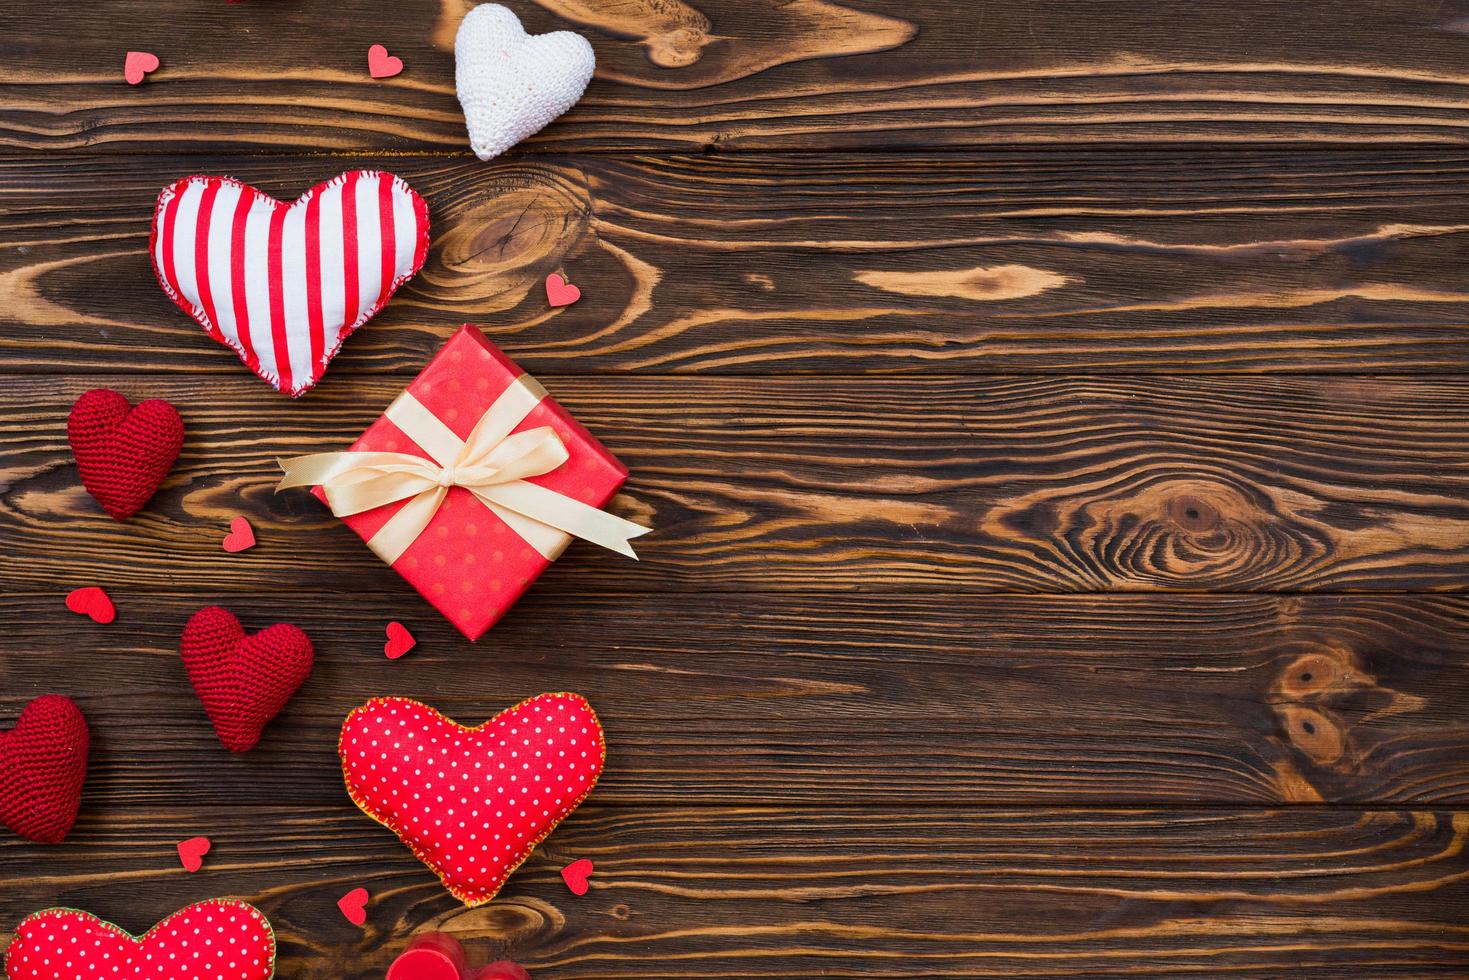 tema de amor, corazones textiles dispuestos sobre una superficie de madera, una caja de regalo para el día de San Valentín foto